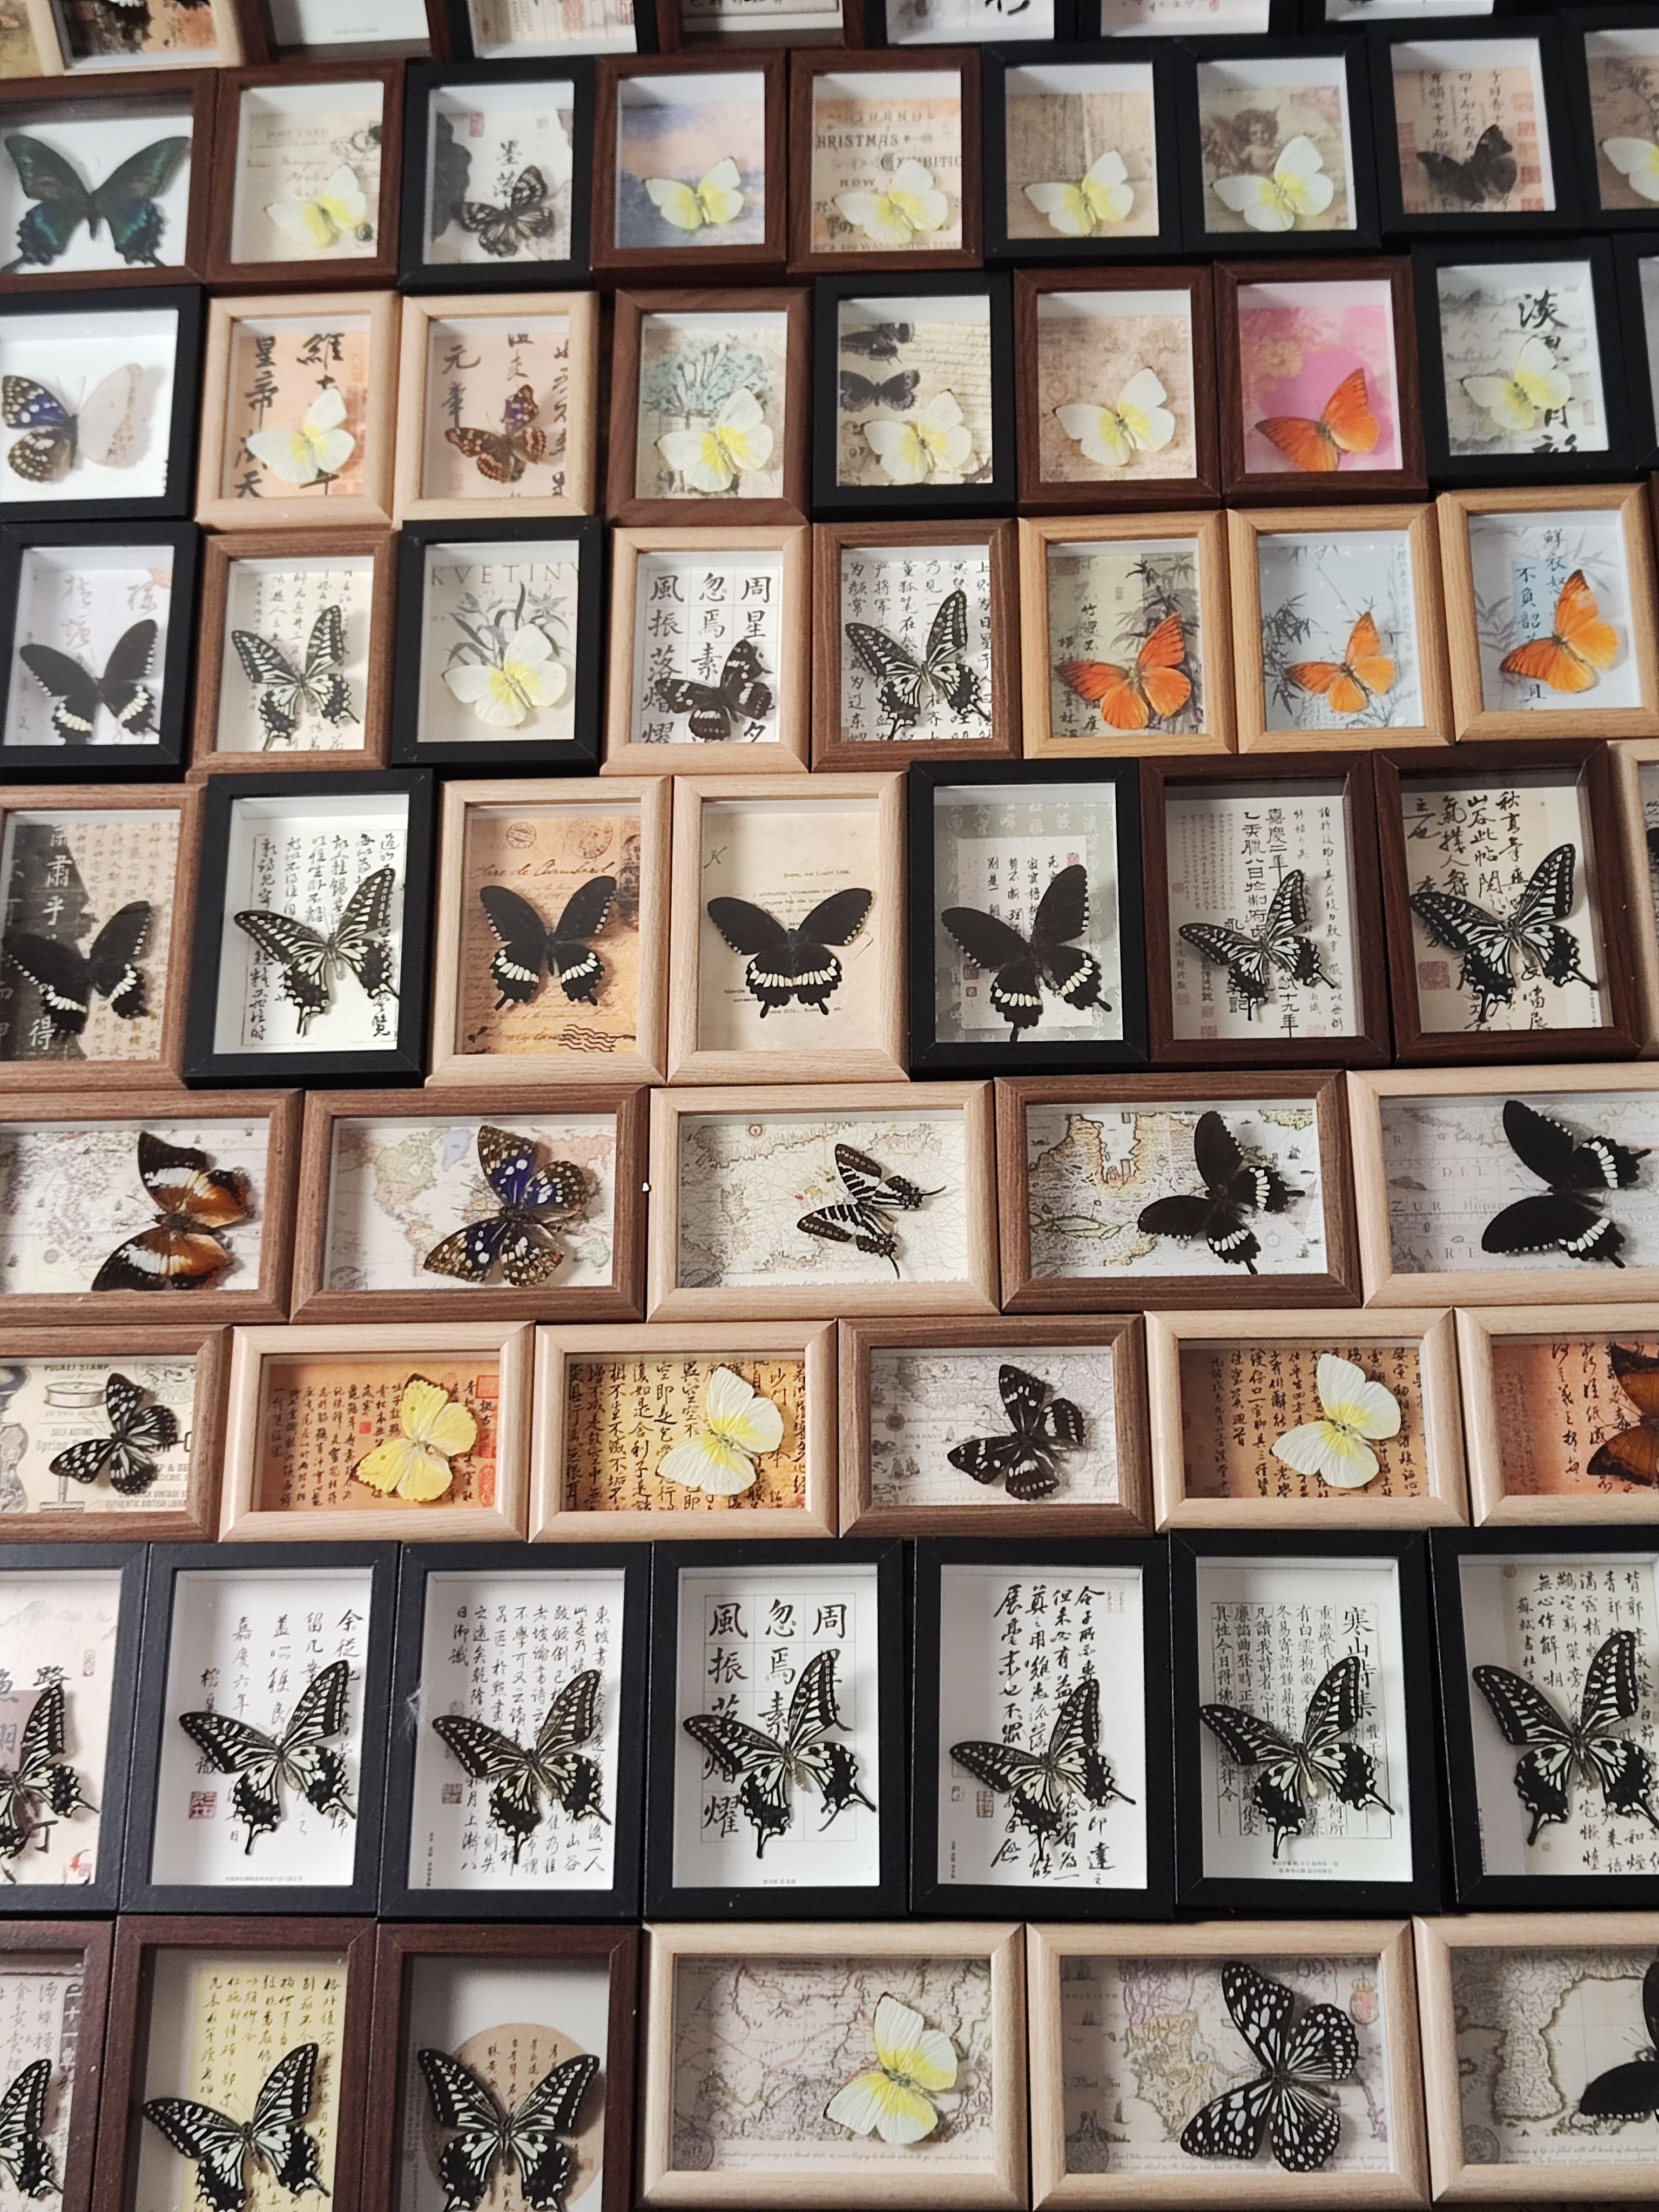 蝴蝶标本相框真蝴蝶盲盒摆件礼物生日幼儿园展示框挂画昆虫摄影翅